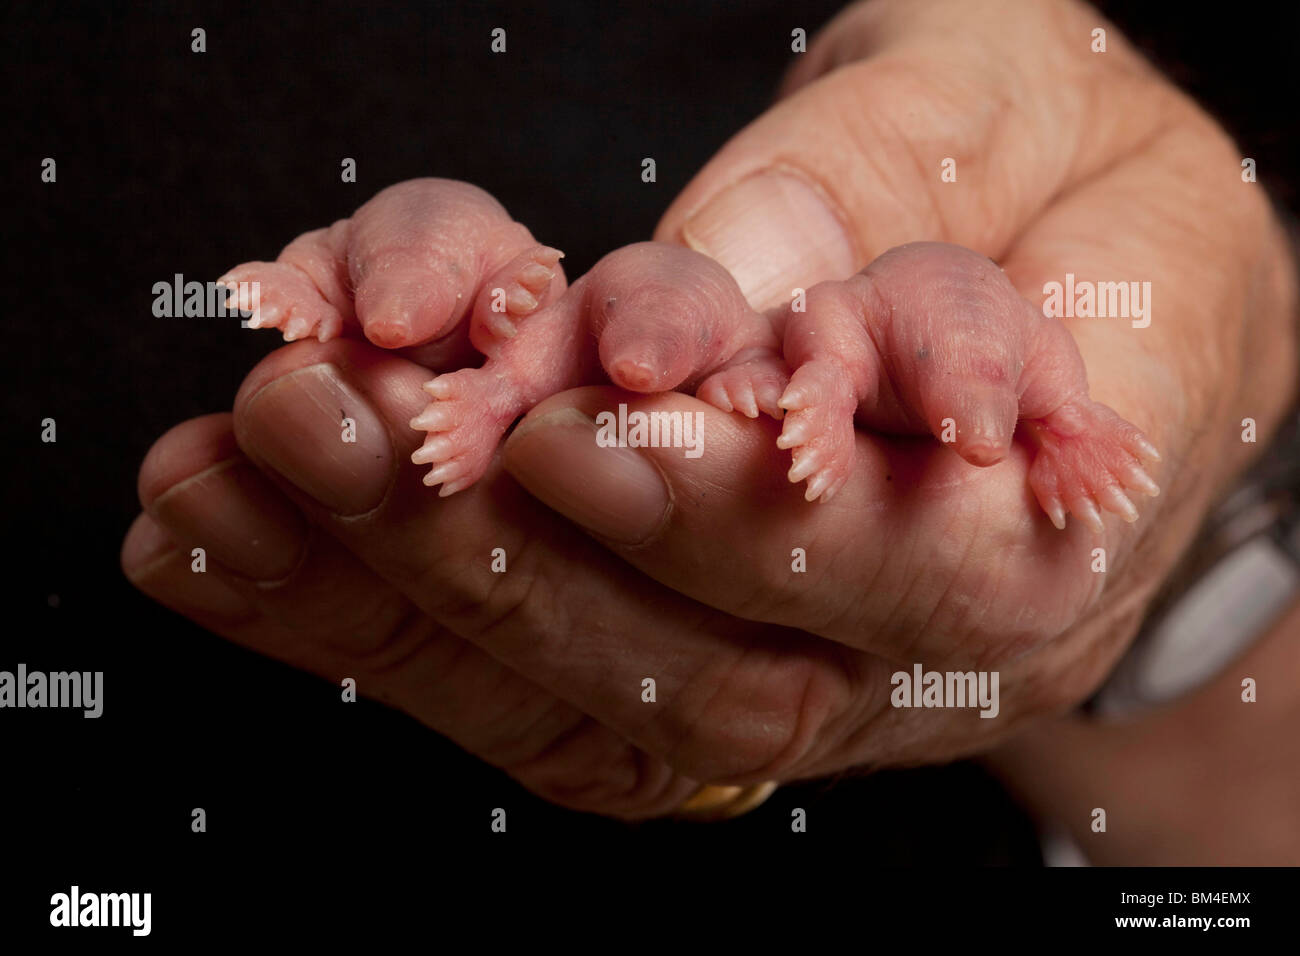 Taupe commun, les nouveau-nés dans la main Banque D'Images